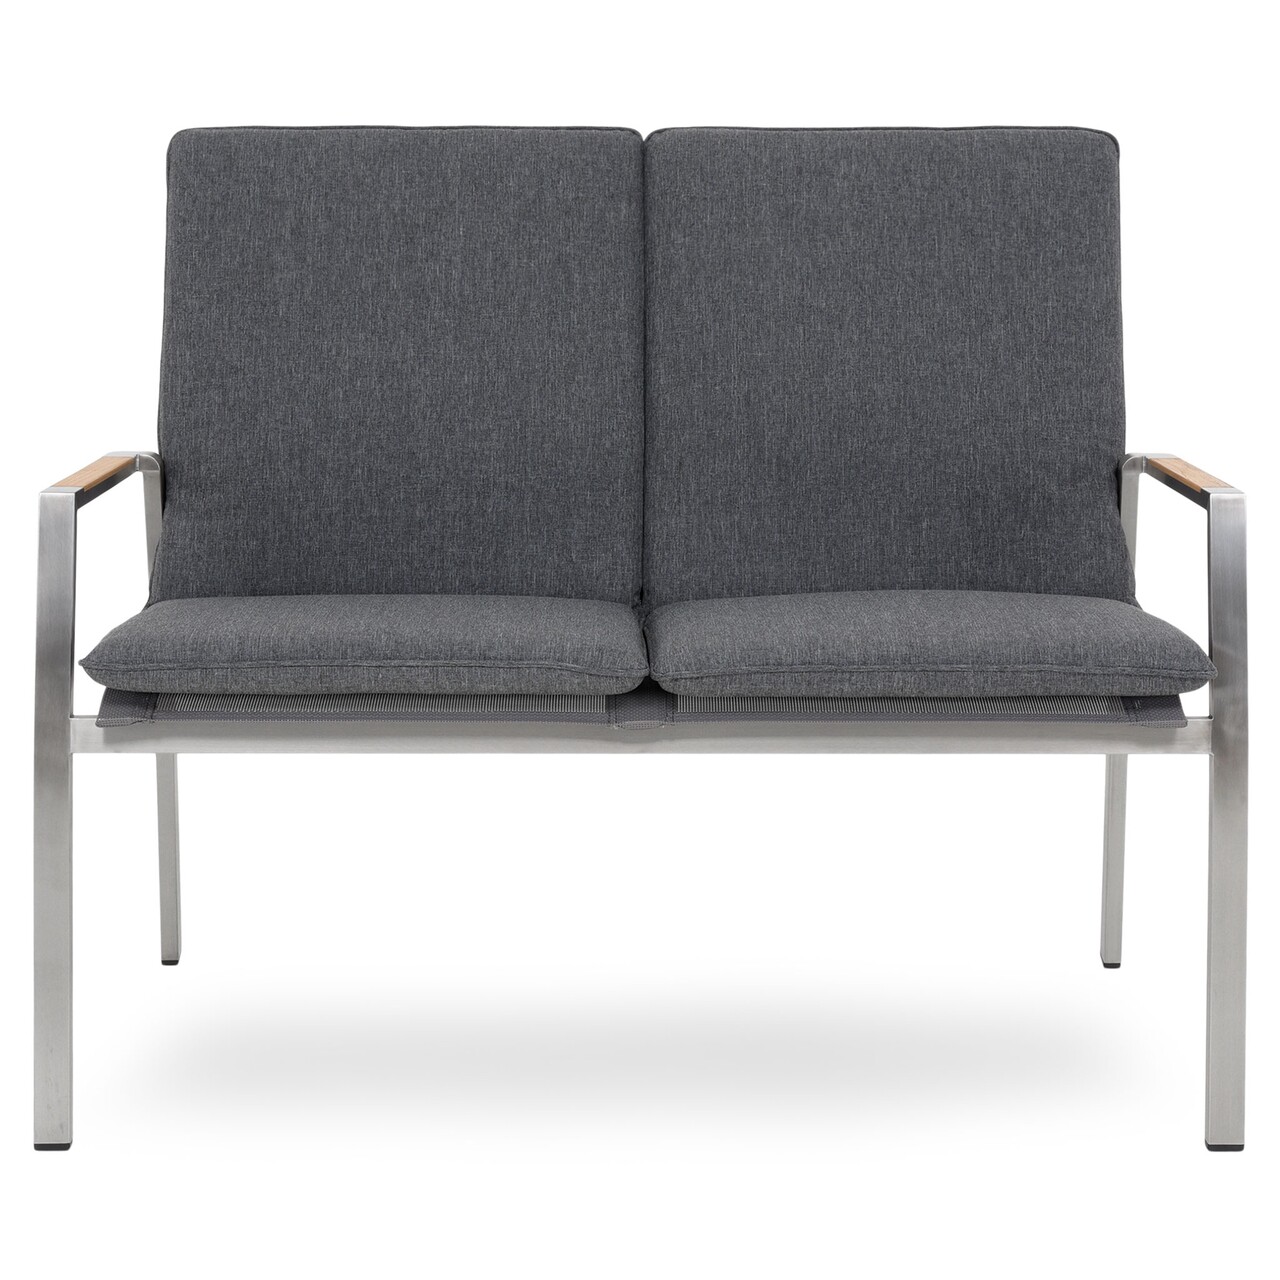 Maison collodi kétszemélyes kanapé, l.115 l.63 h.92.5 cm, rozsdamentes acél, szürke/természetes